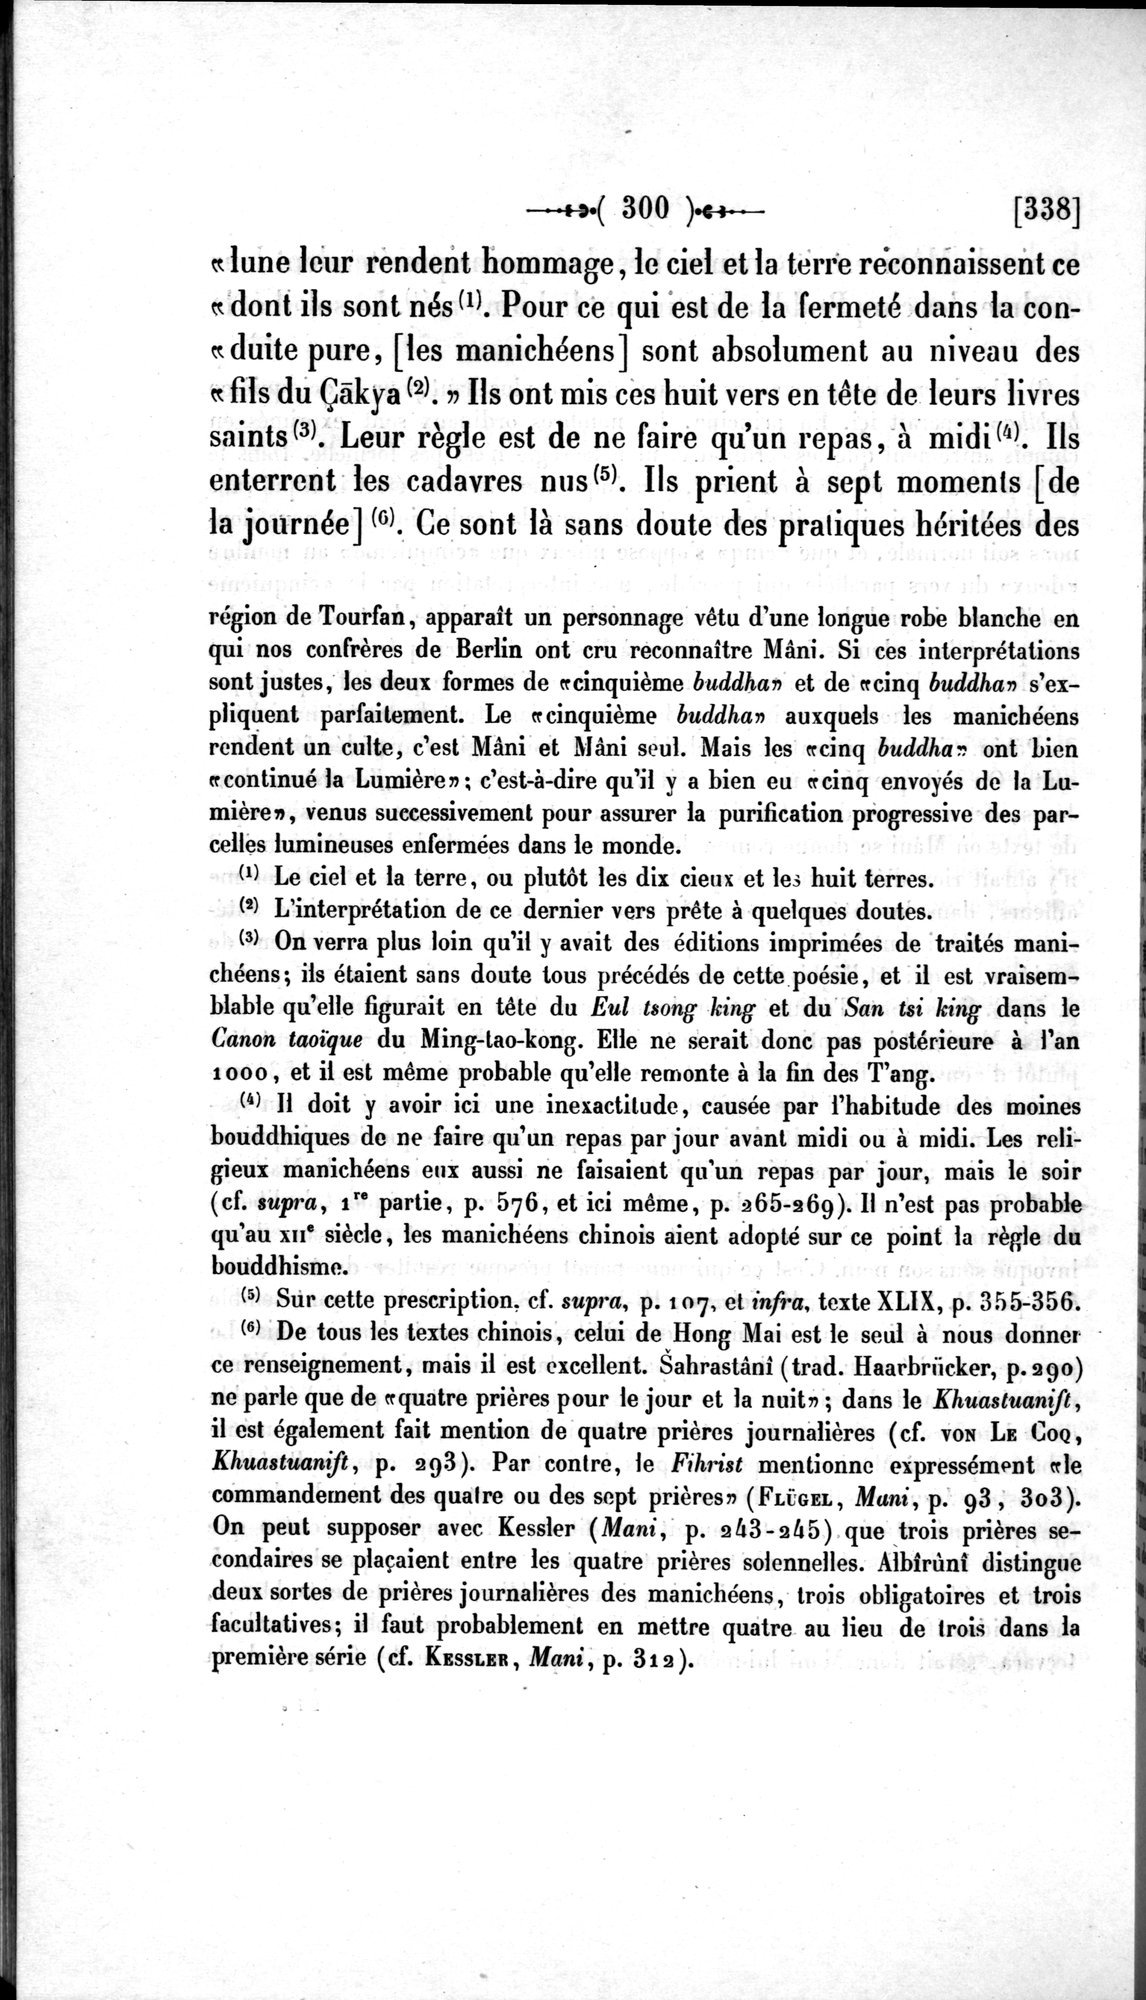 Un traité manichéen retrouvé en Chine : vol.1 / Page 310 (Grayscale High Resolution Image)